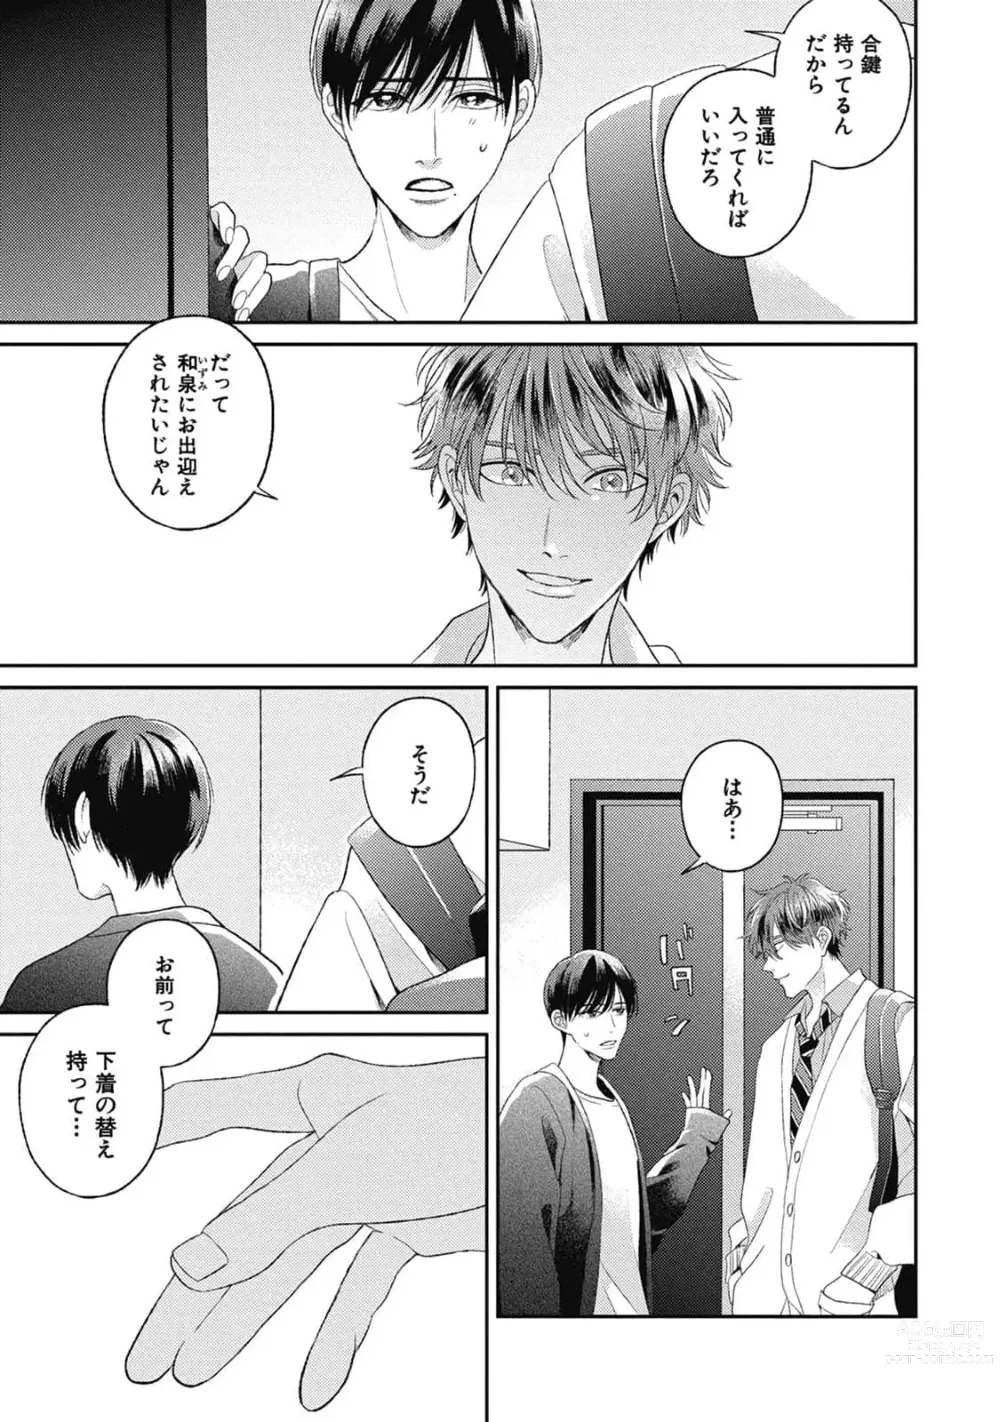 Page 5 of manga Bokura no Shuumatsu